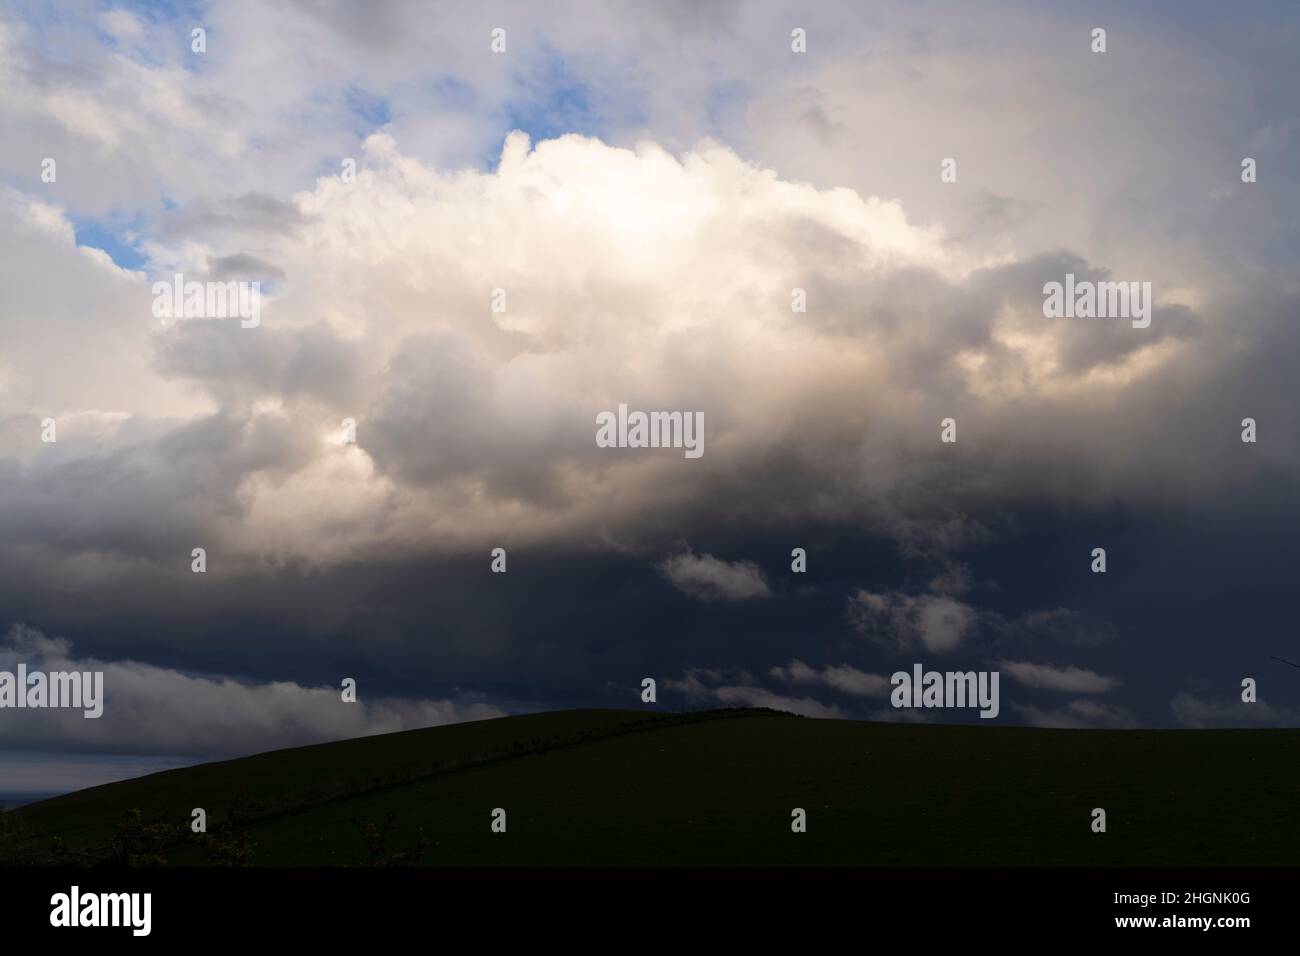 A rain cloud over farm land at St Abbs Head, Scotland Stock Photo